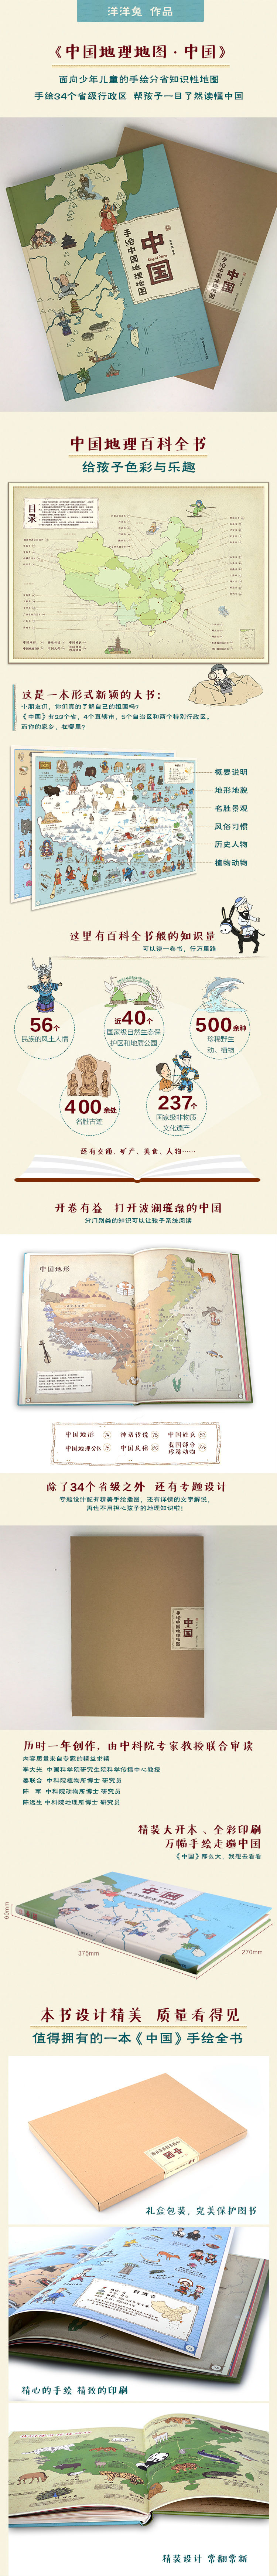 科普读物 儿童科普 中国历史地图 手绘中国地理地图人文版洋洋兔绘本